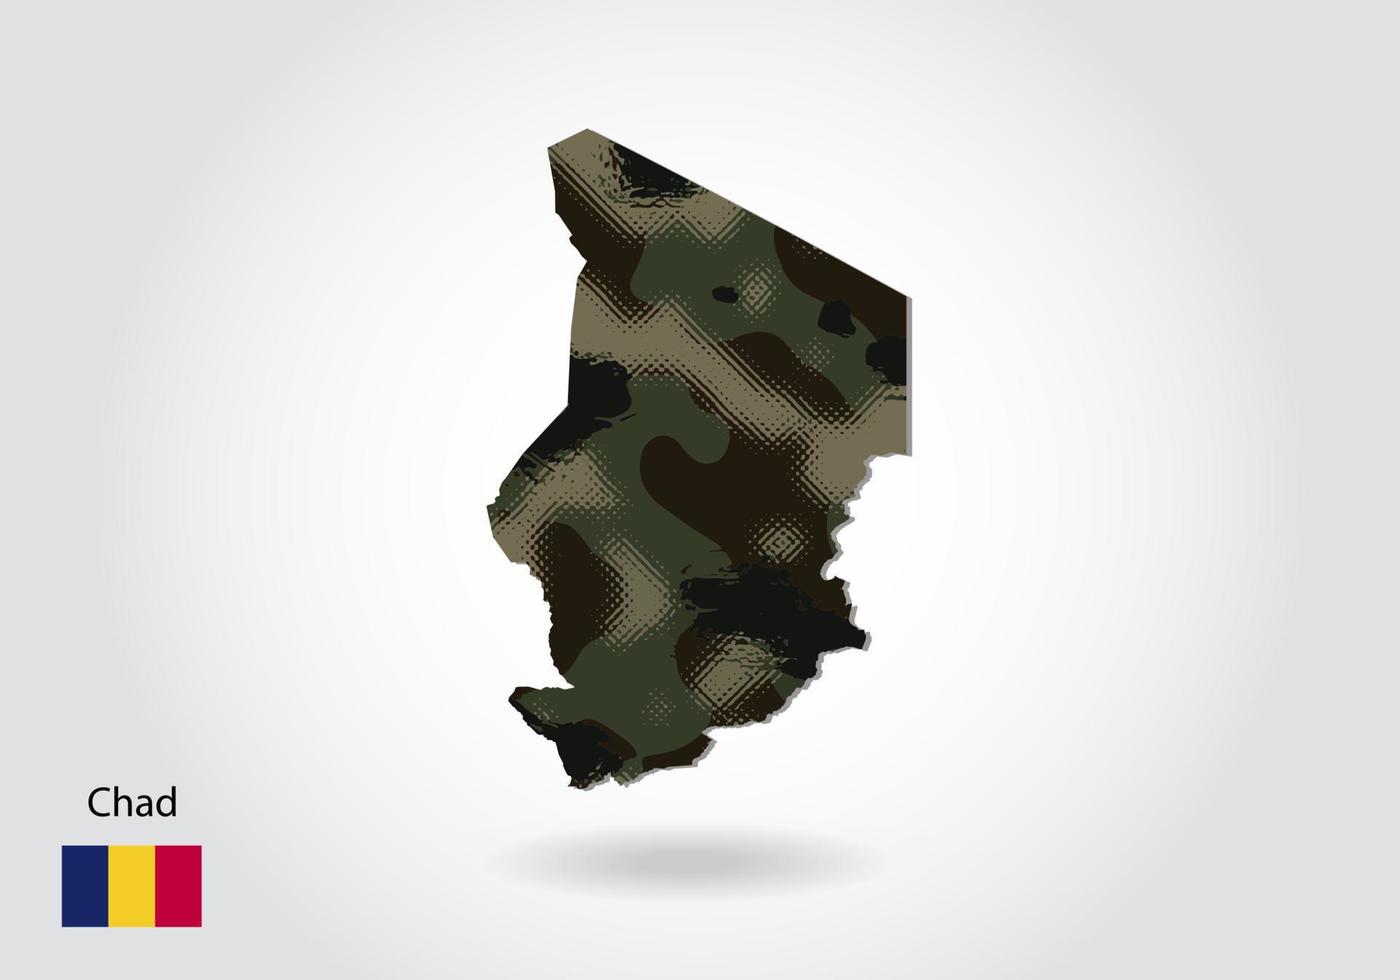 carte du tchad avec motif camouflage, forêt - texture verte sur la carte. concept militaire pour l'armée, le soldat et la guerre. armoiries, drapeau. vecteur